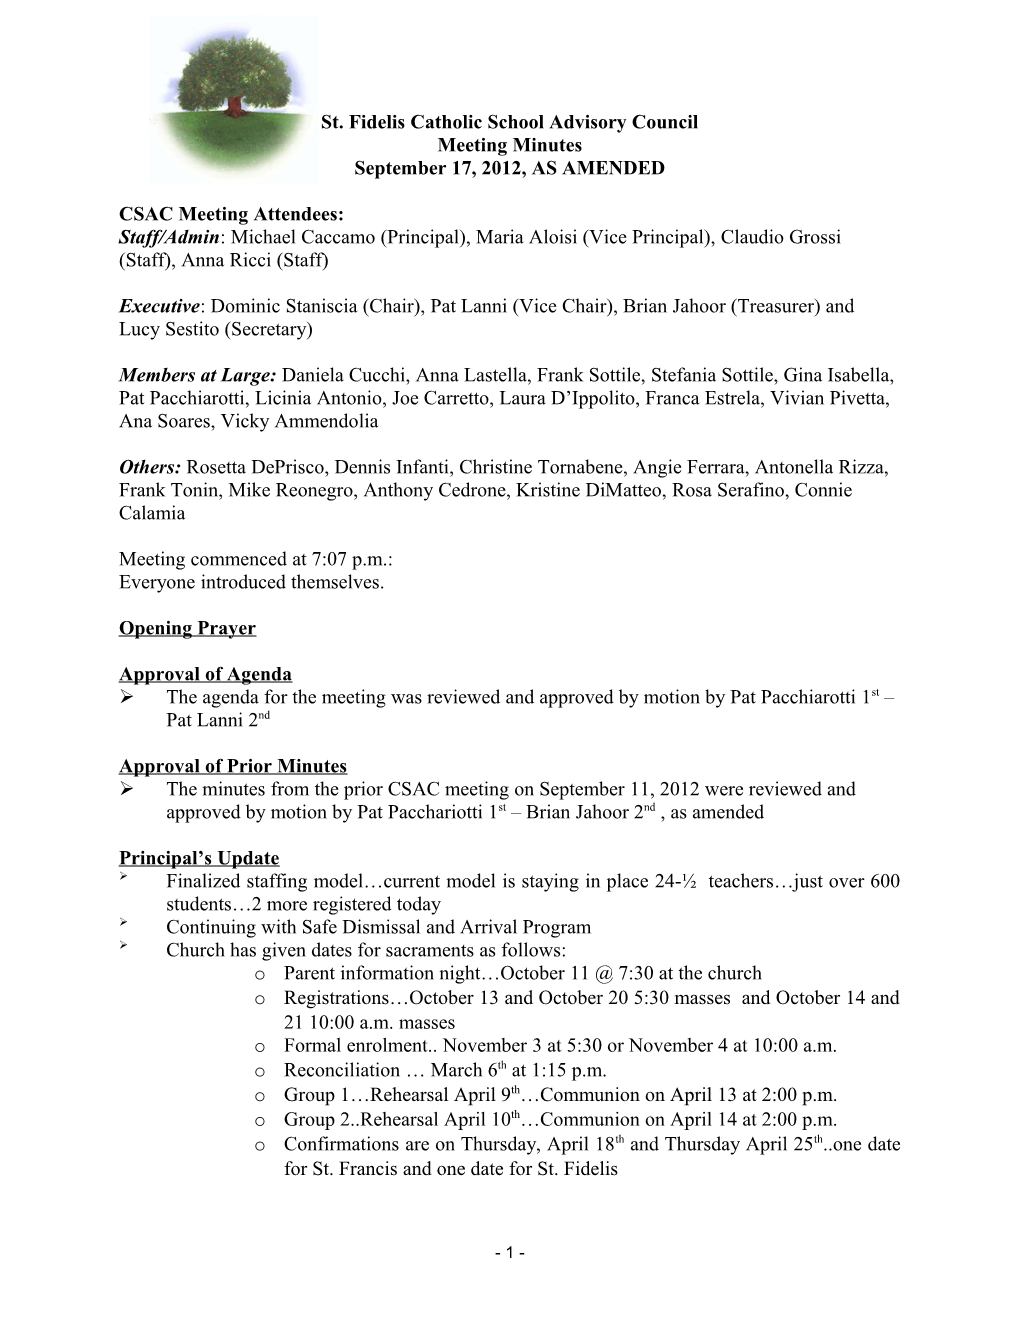 CSAC - Meeting Minutes-September 17-12